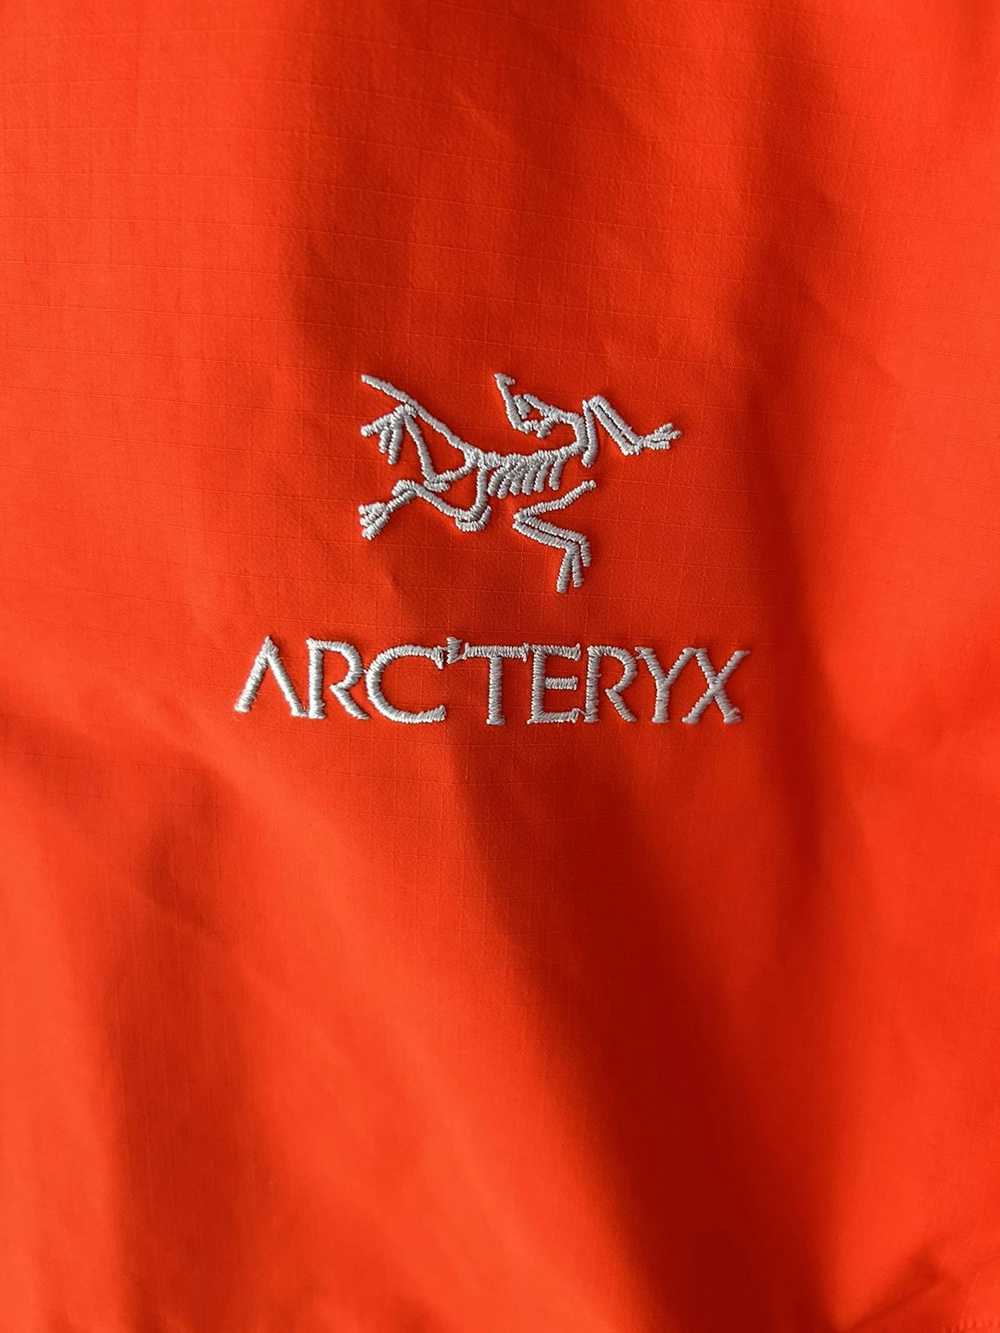 Arc'Teryx Arc’teryx Goretex Zeta Sl Jacket - image 5